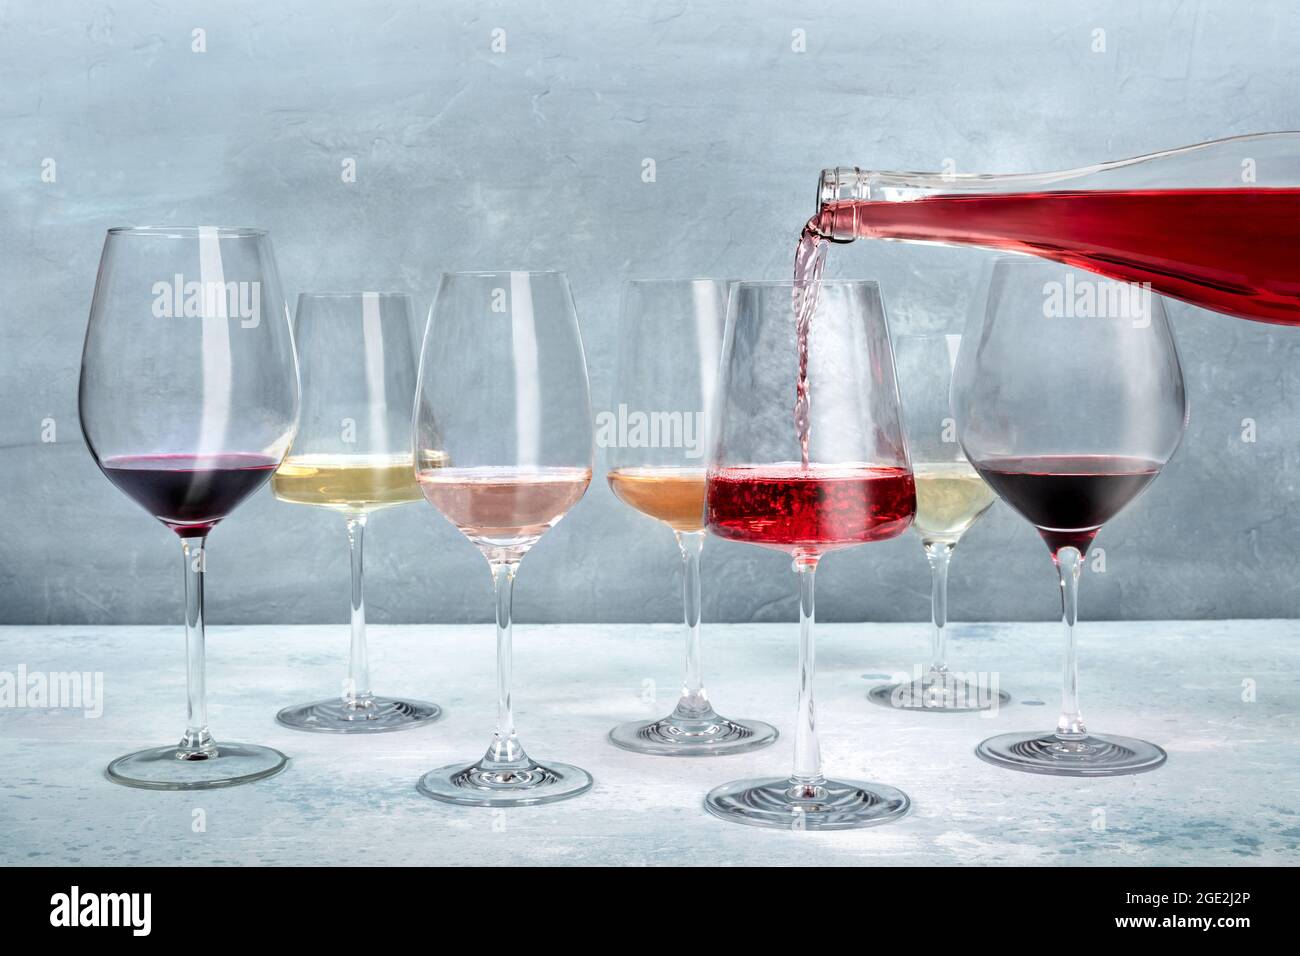 Vino rosado servido en una copa en una degustación, con vino blanco y tinto de varios colores. Evento de cata de vinos Foto de stock